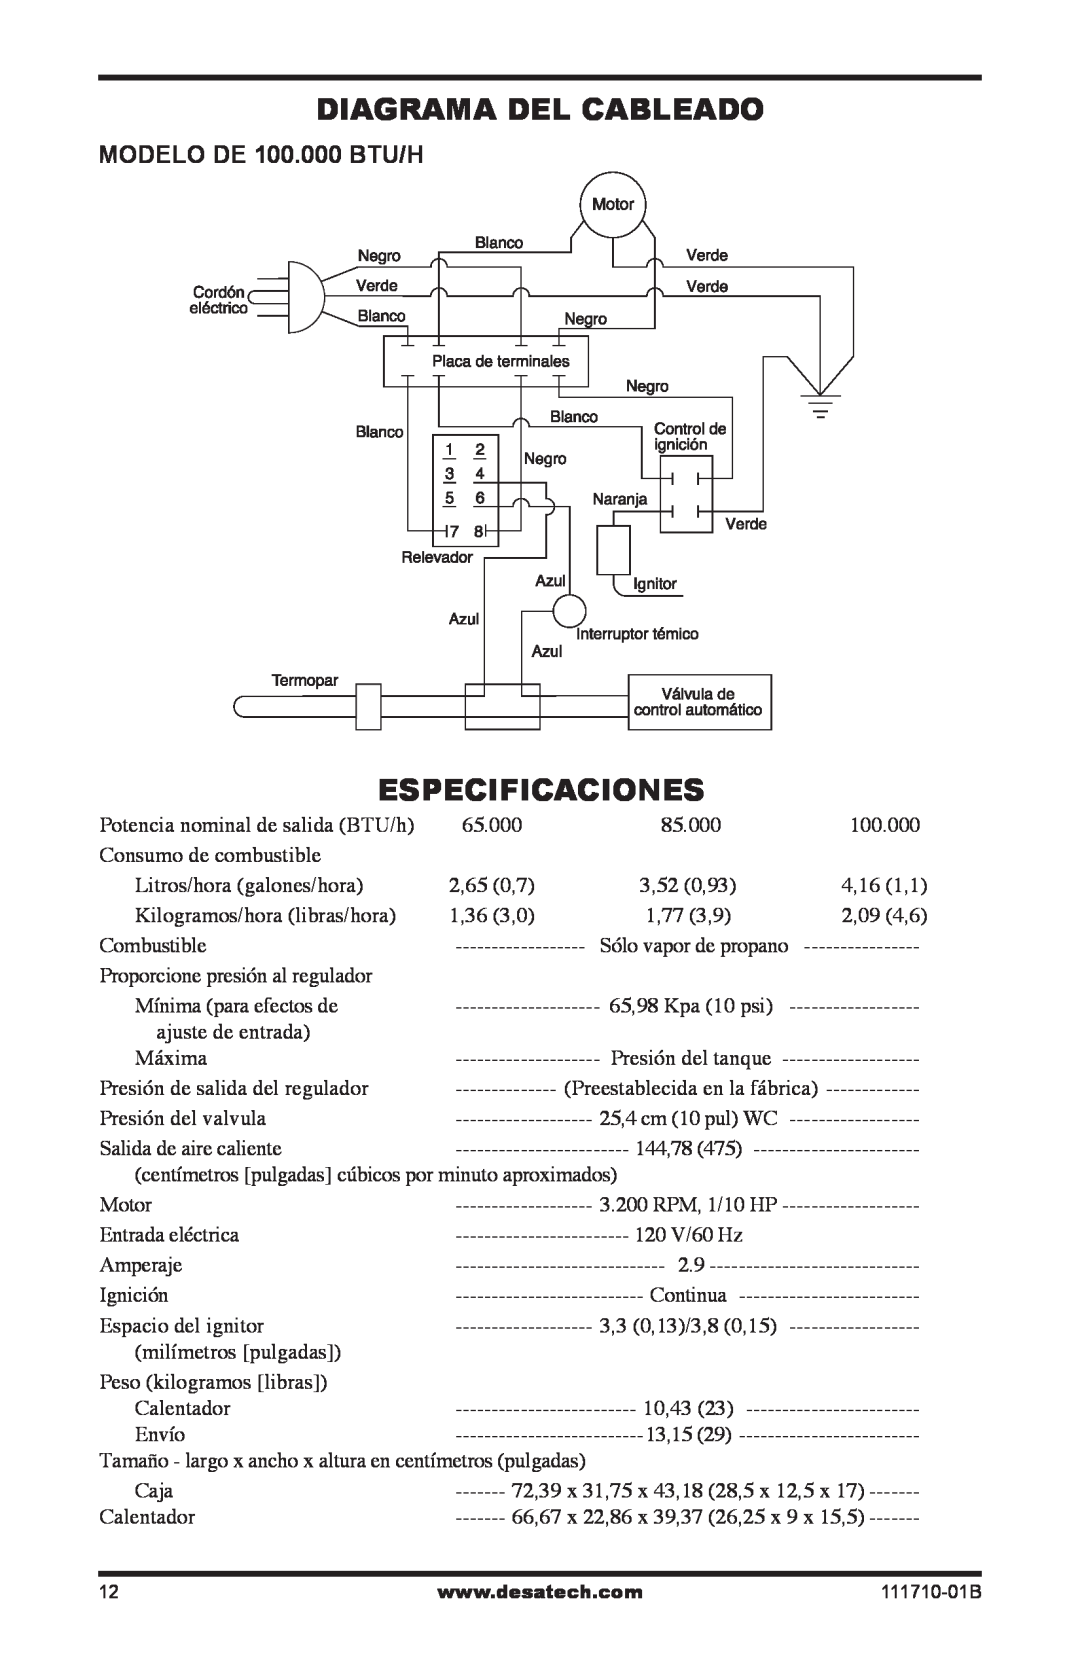 Desa RLP100 owner manual Diagrama Del Cableado, Especificaciones, MODELO DE 100.000 BTU/H 